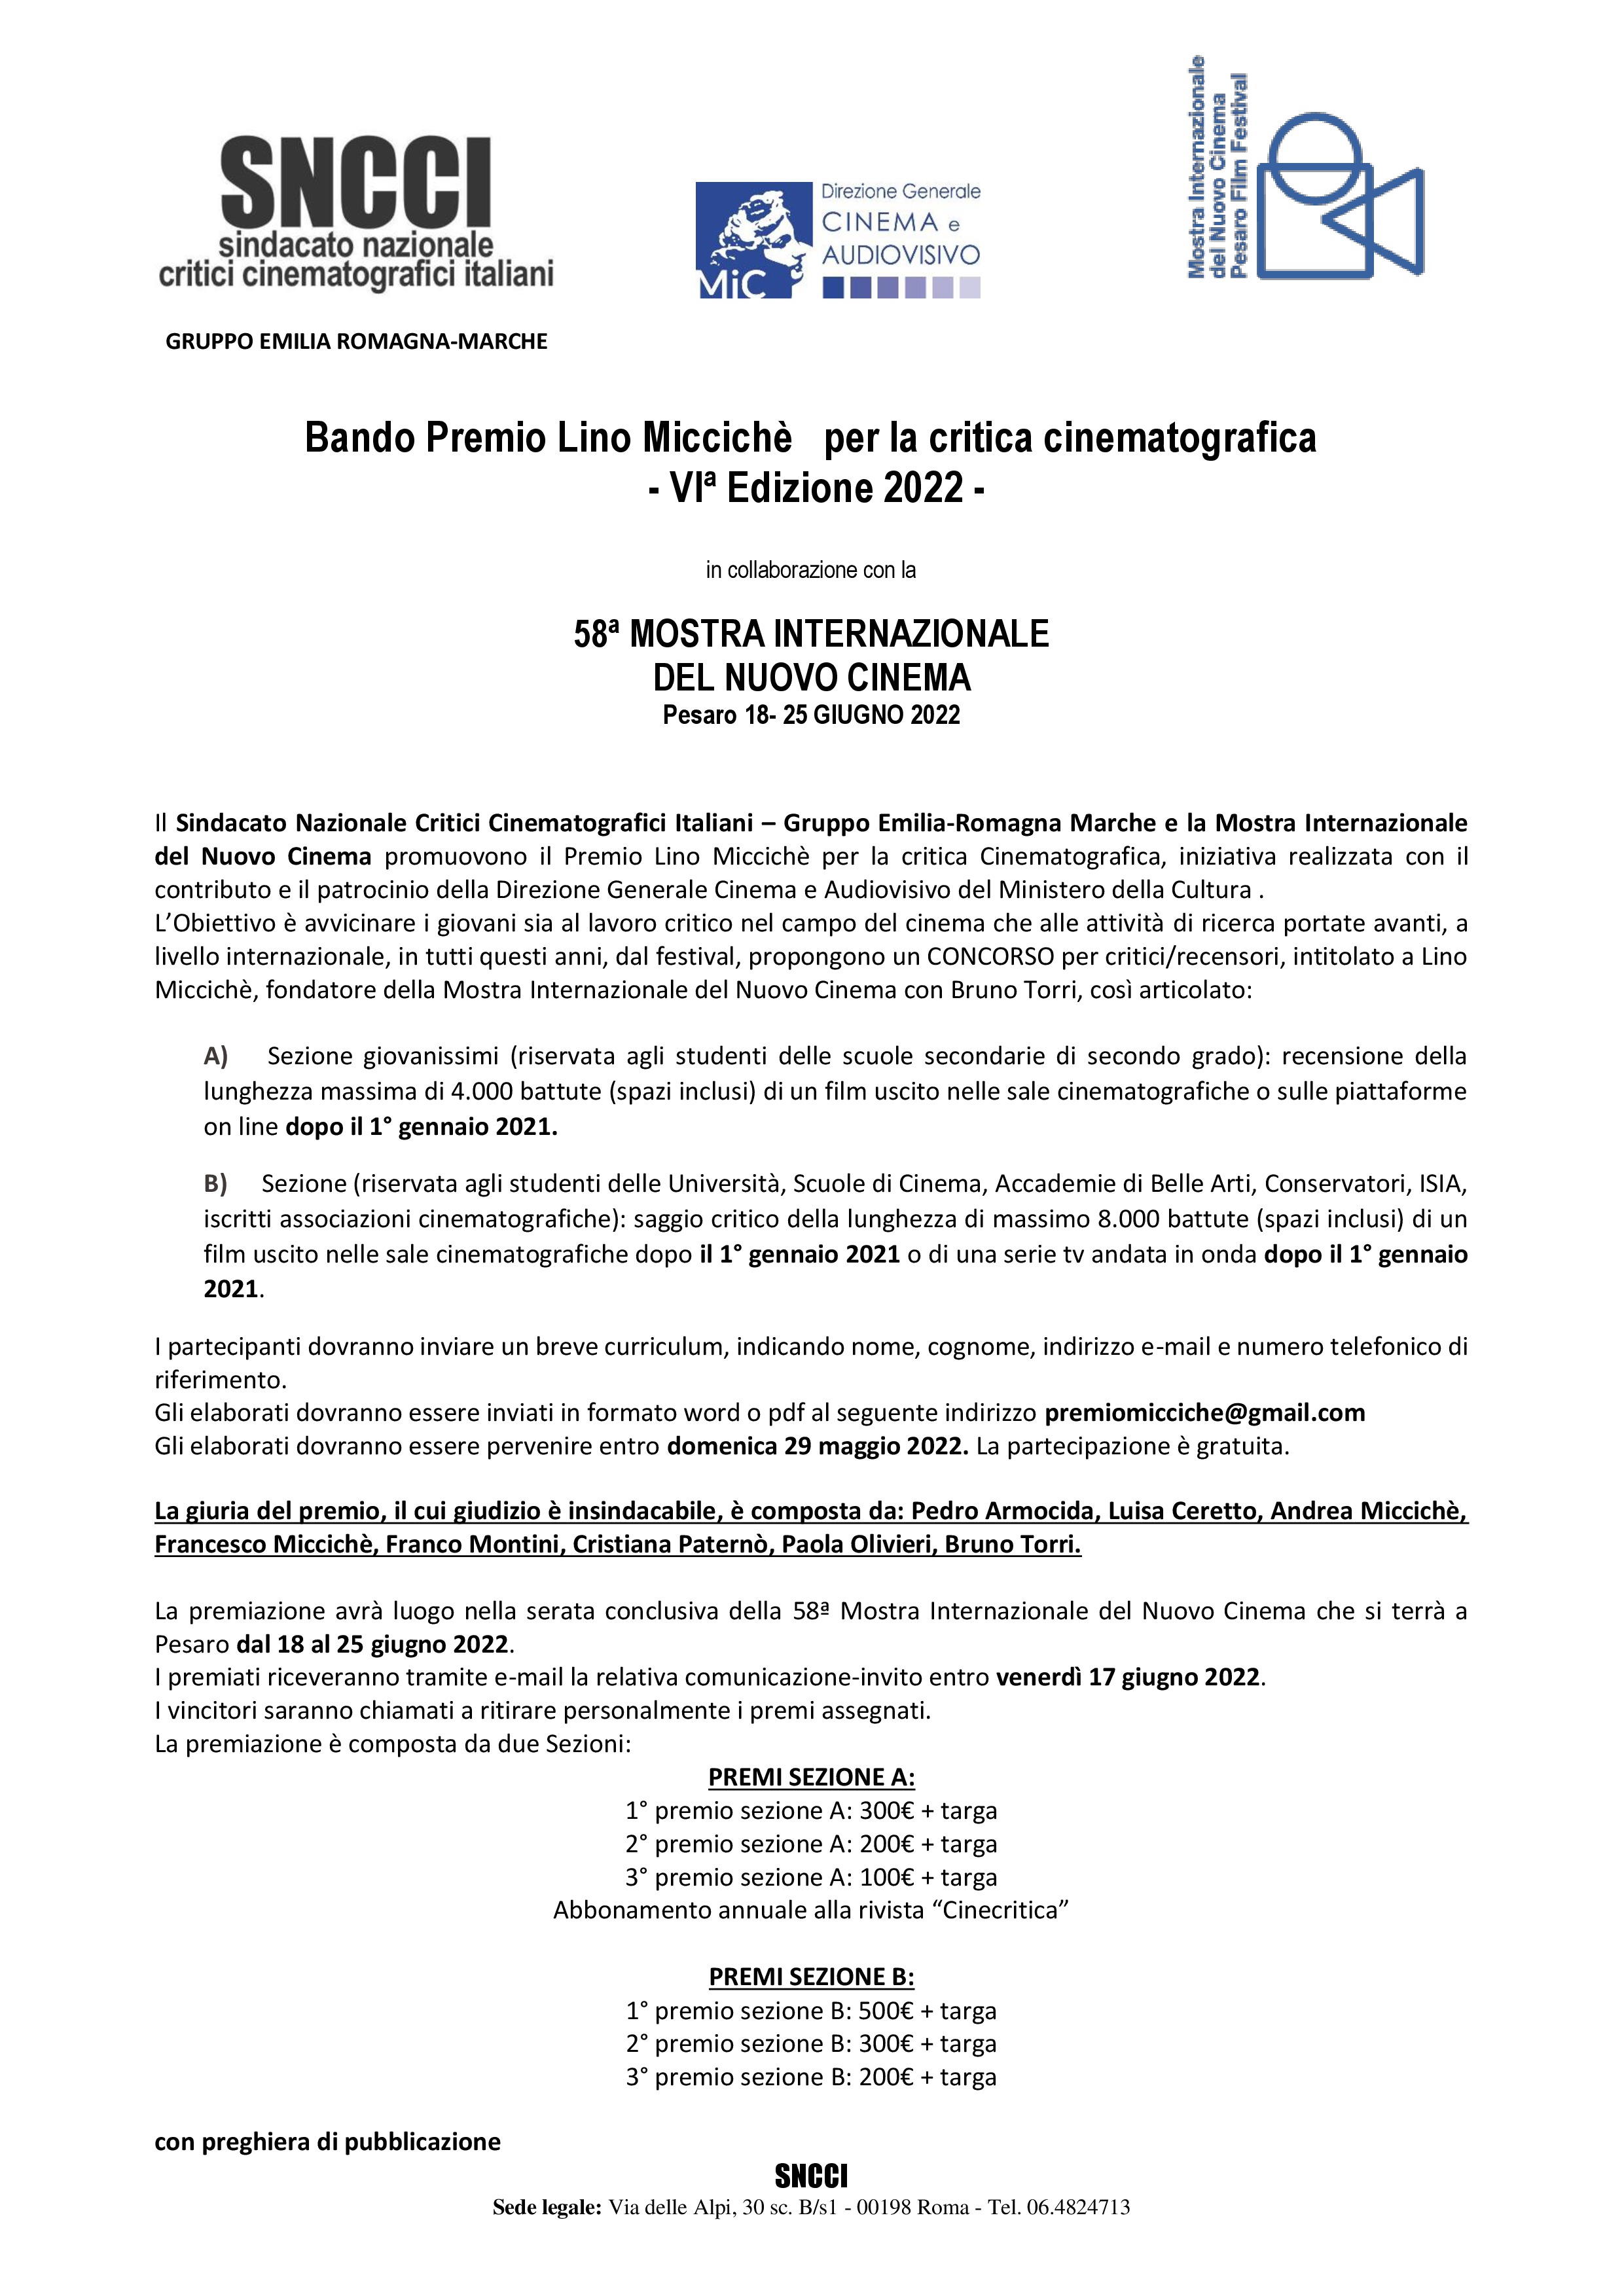 Annexe Bando  PREMIO MICCICHE 4a Edizione 2022 (1).jpg